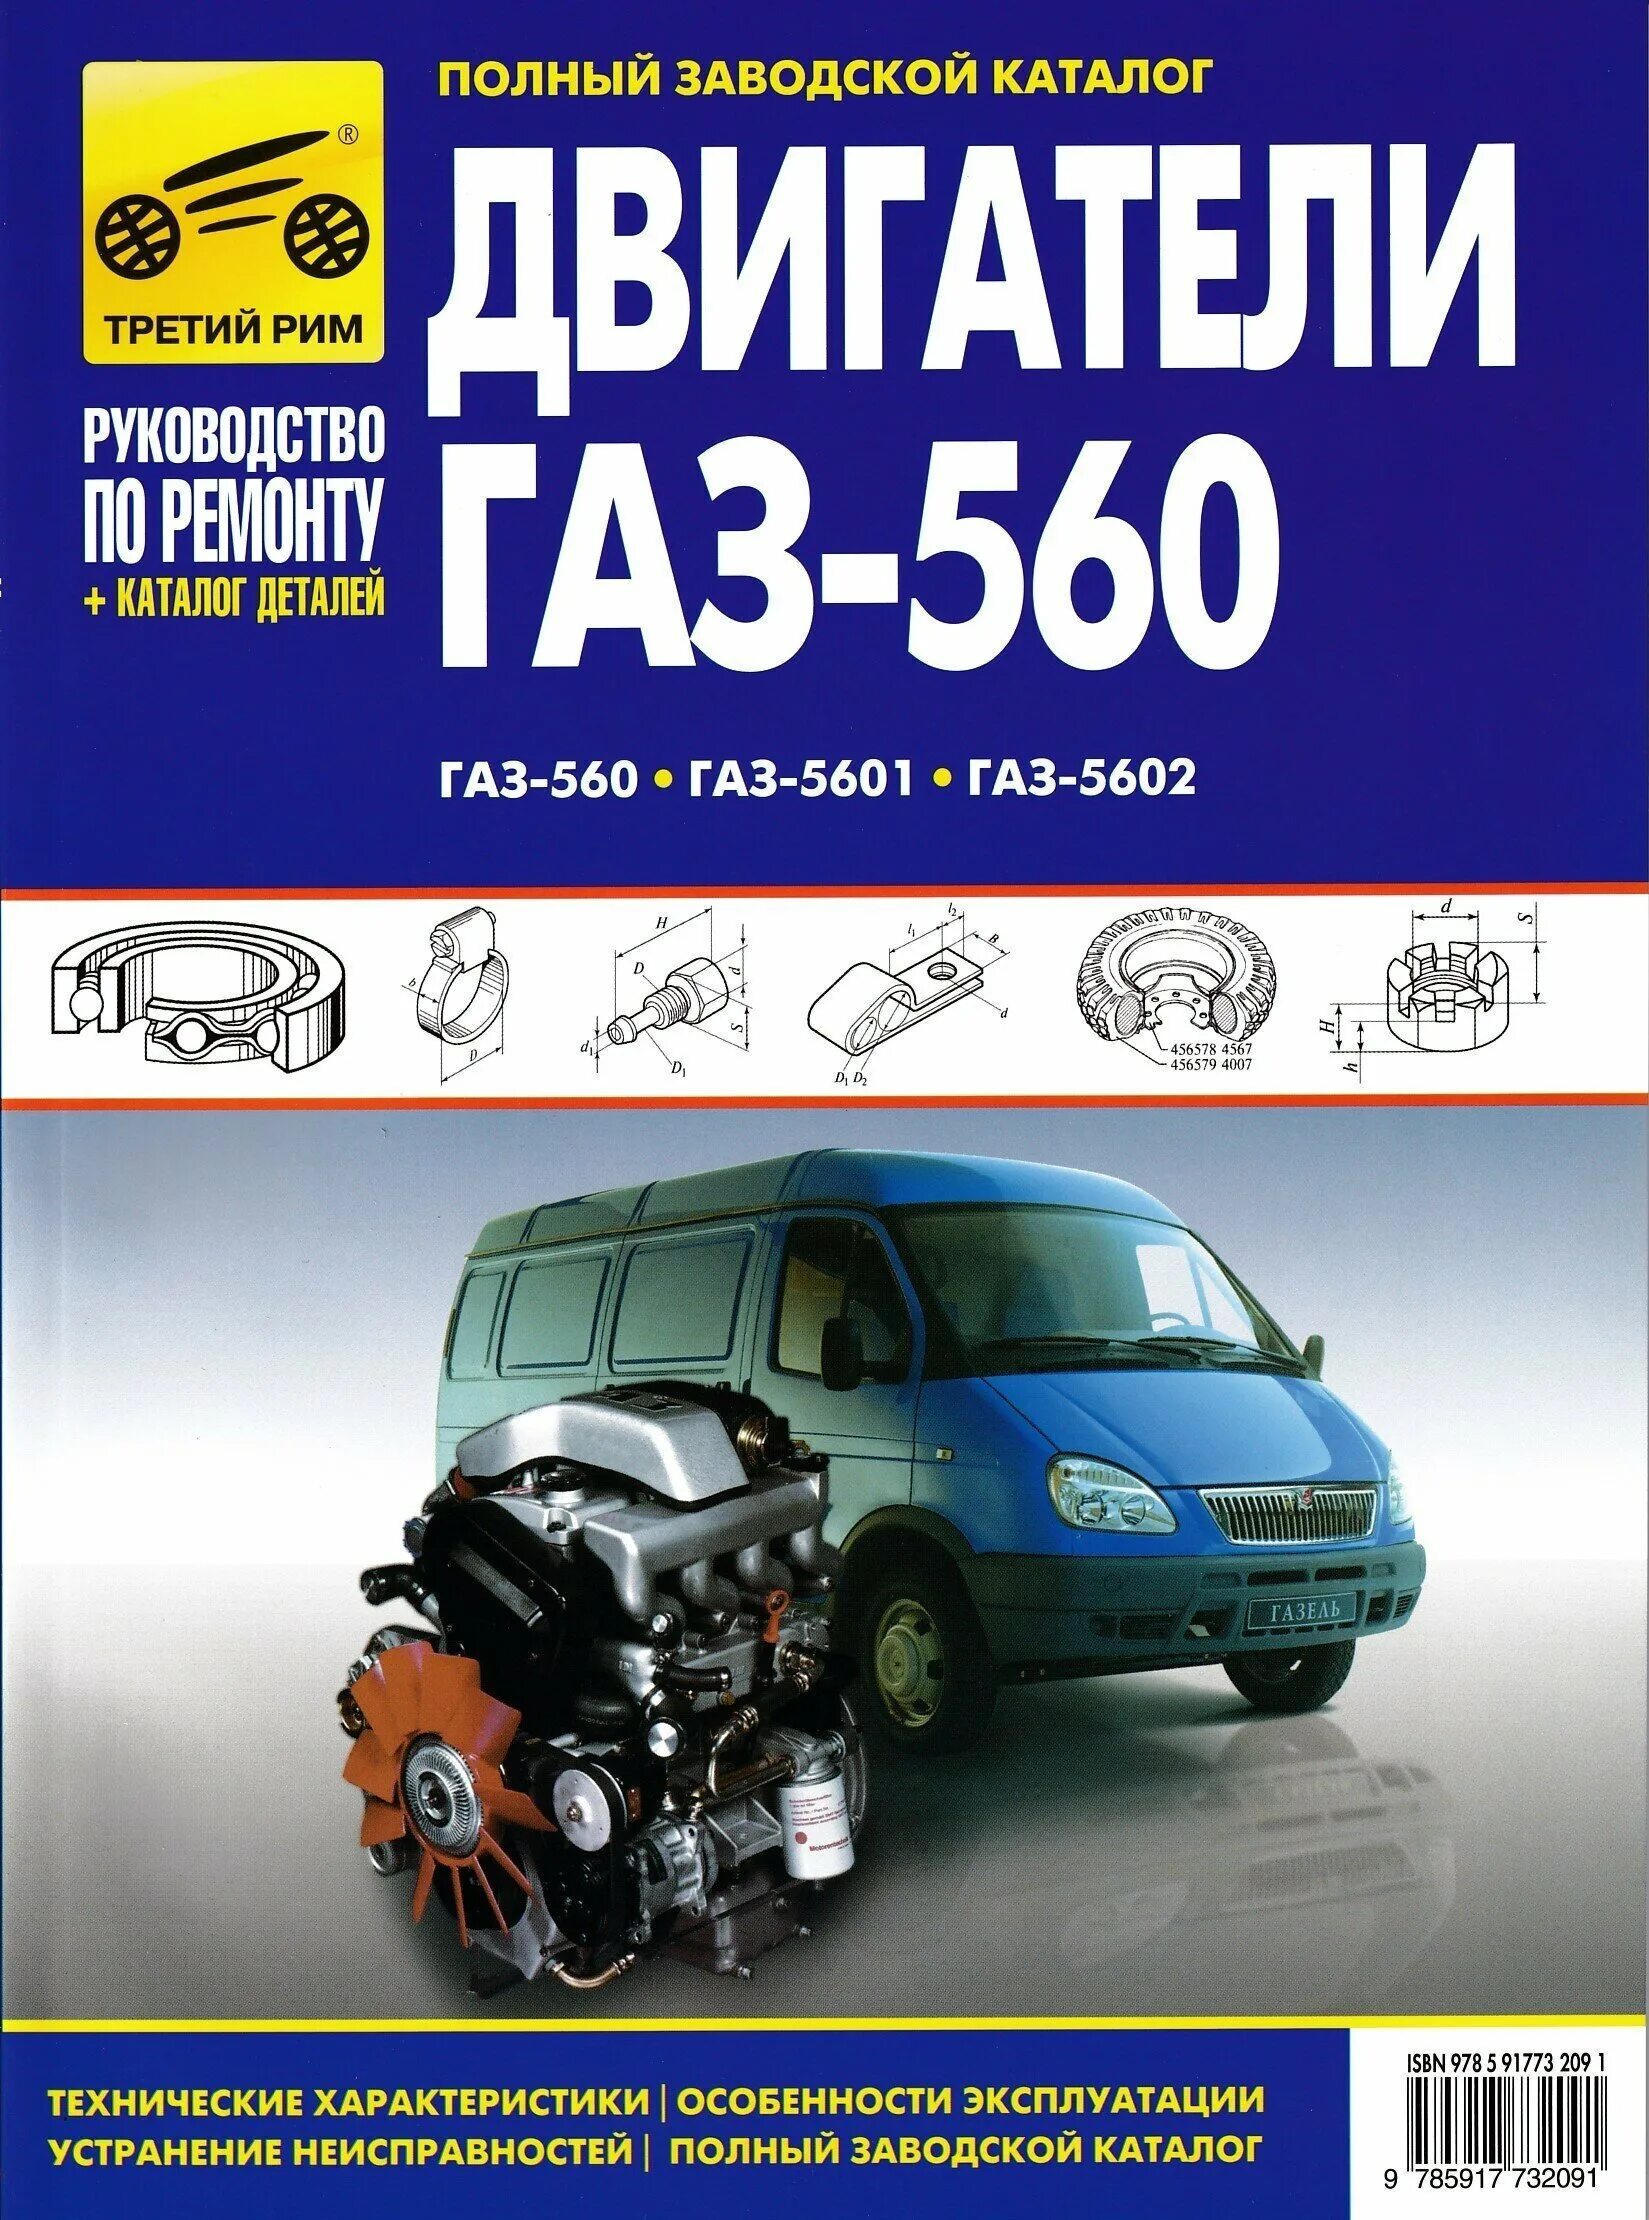 ДВС ГАЗ 560. ГАЗ 5601 двигатель. ГАЗ-560 двигатель характеристики технические. ГАЗ-560 Штайер книга.